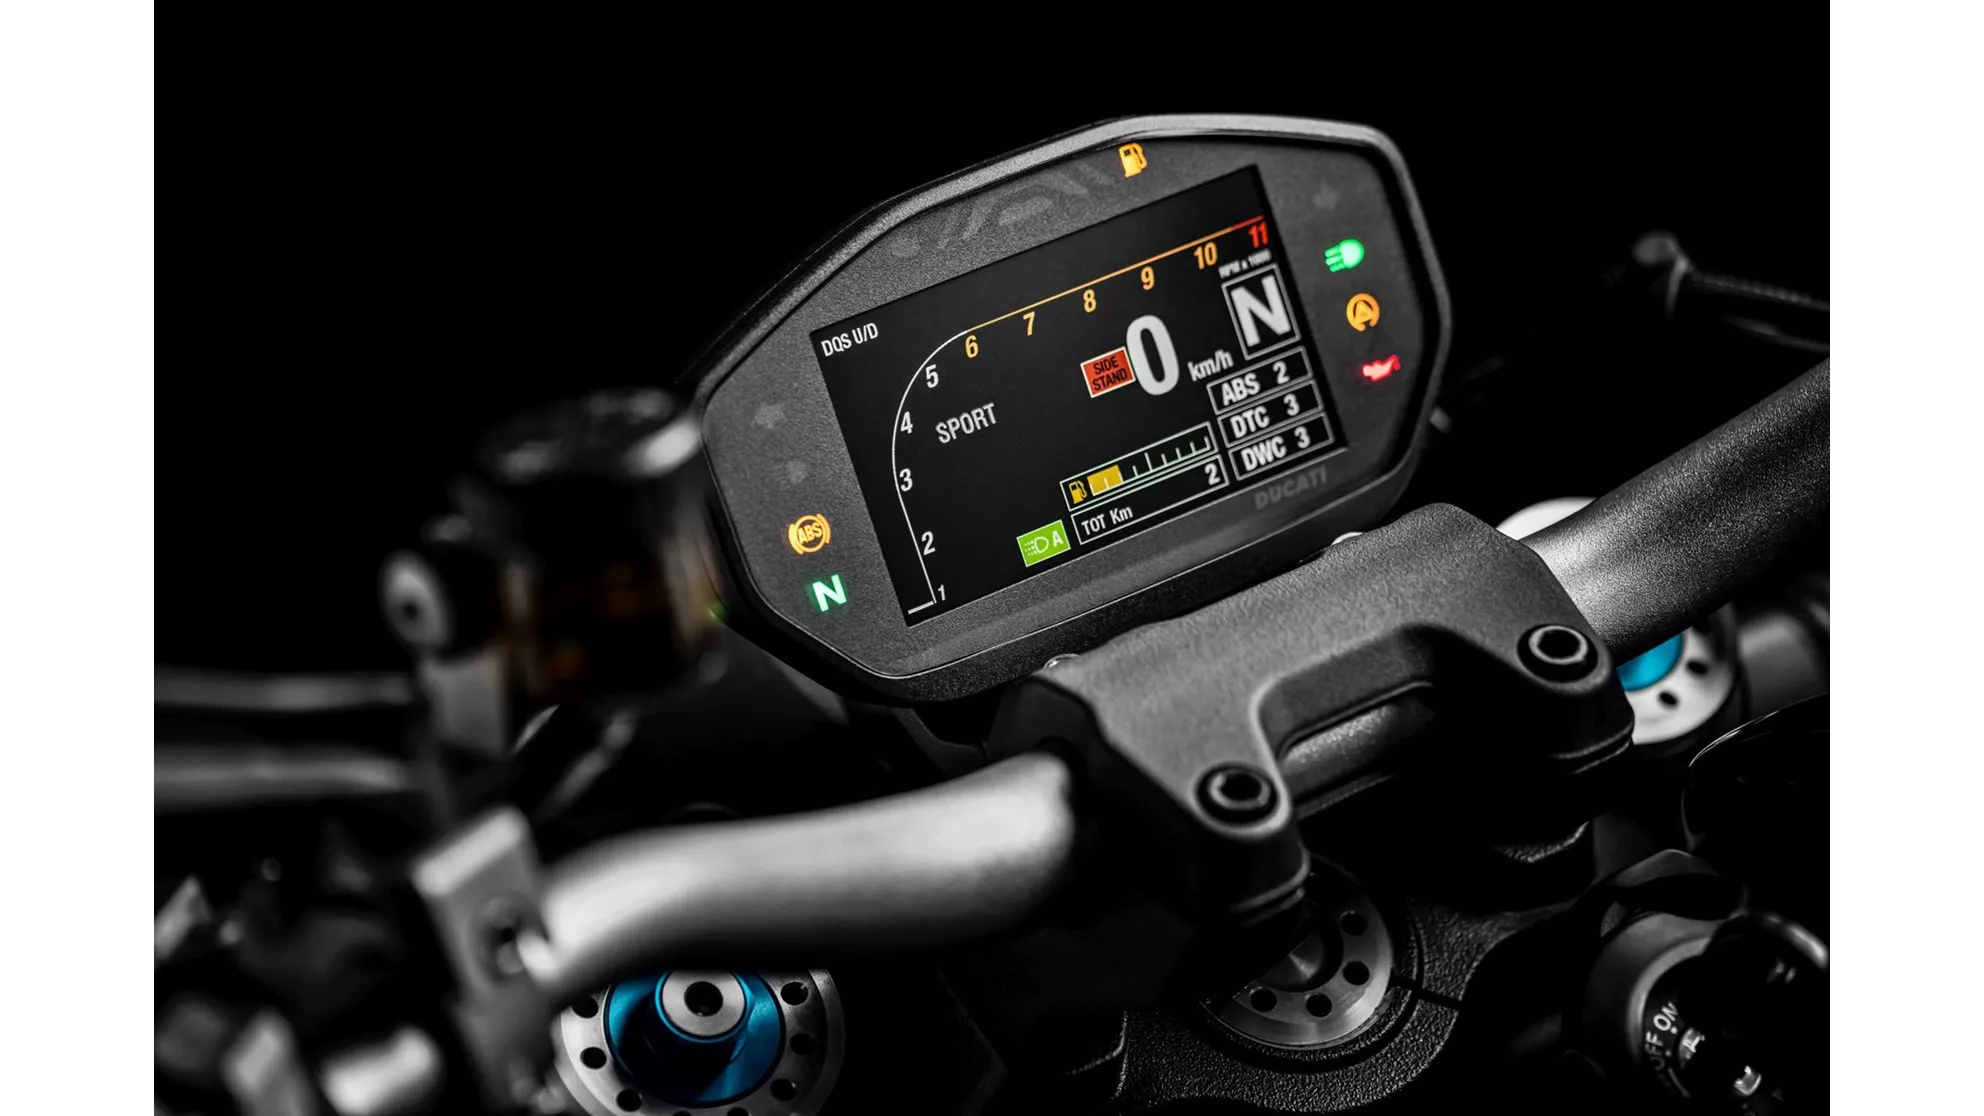 Bild Ducati Monster 1200 S